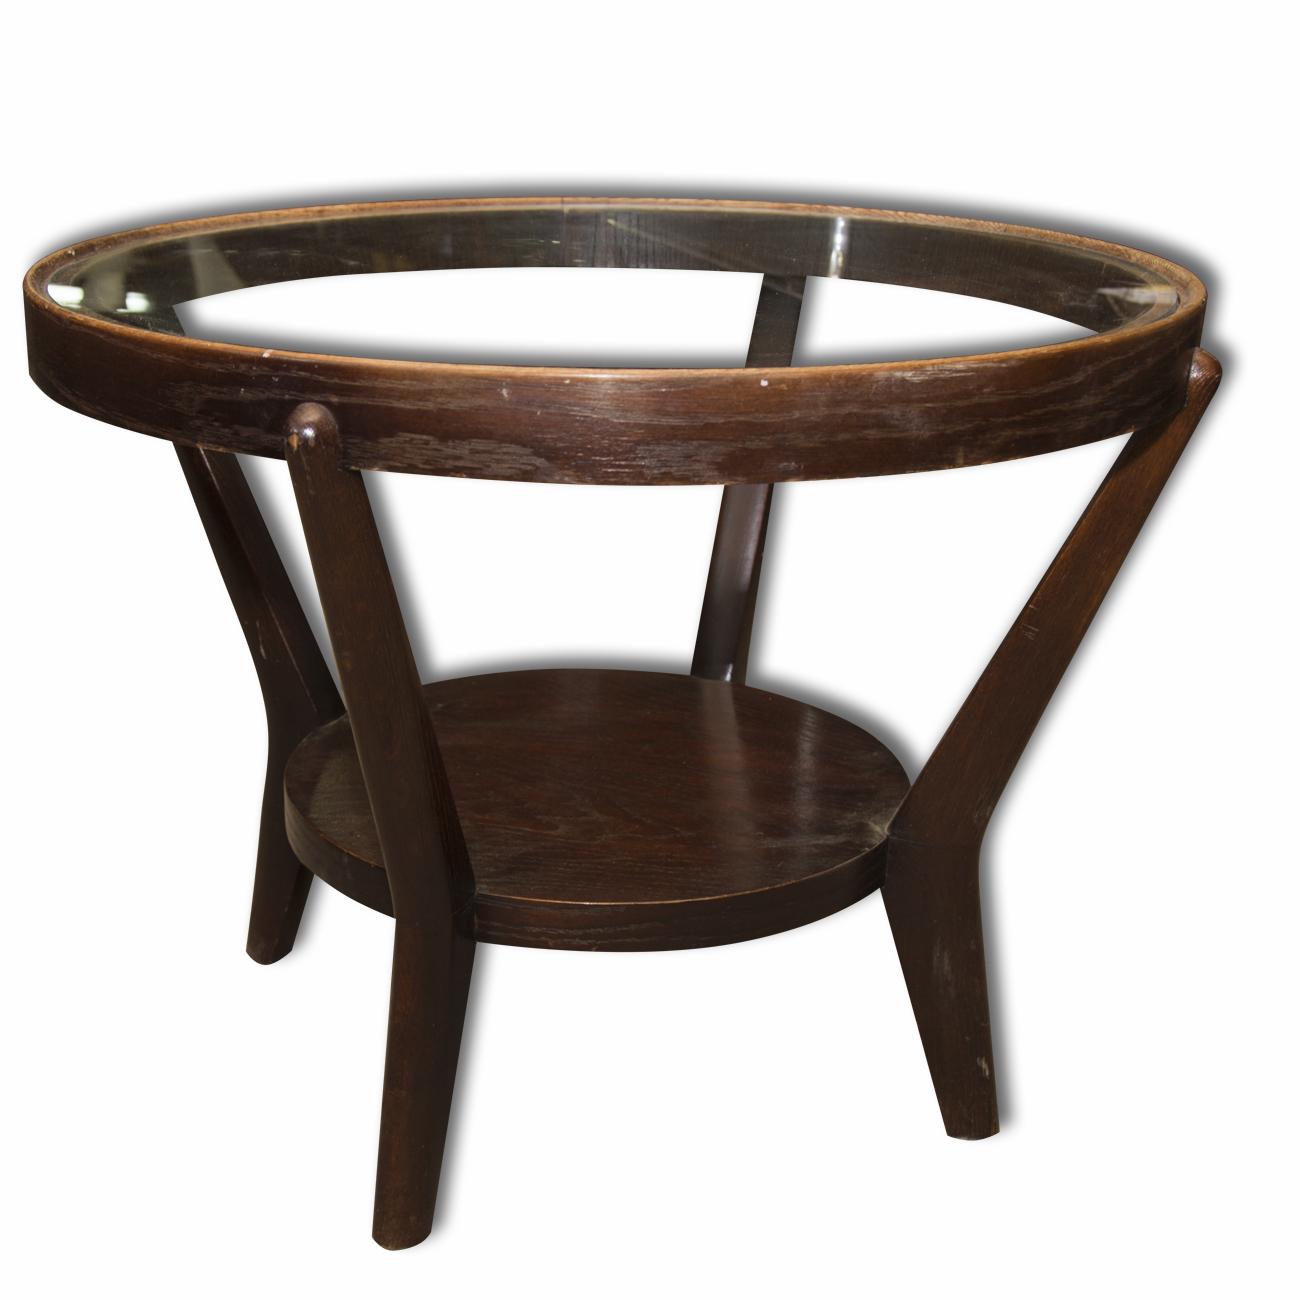 Mid century glazed coffee table in oak by Kropacek & Kozelka, 1944